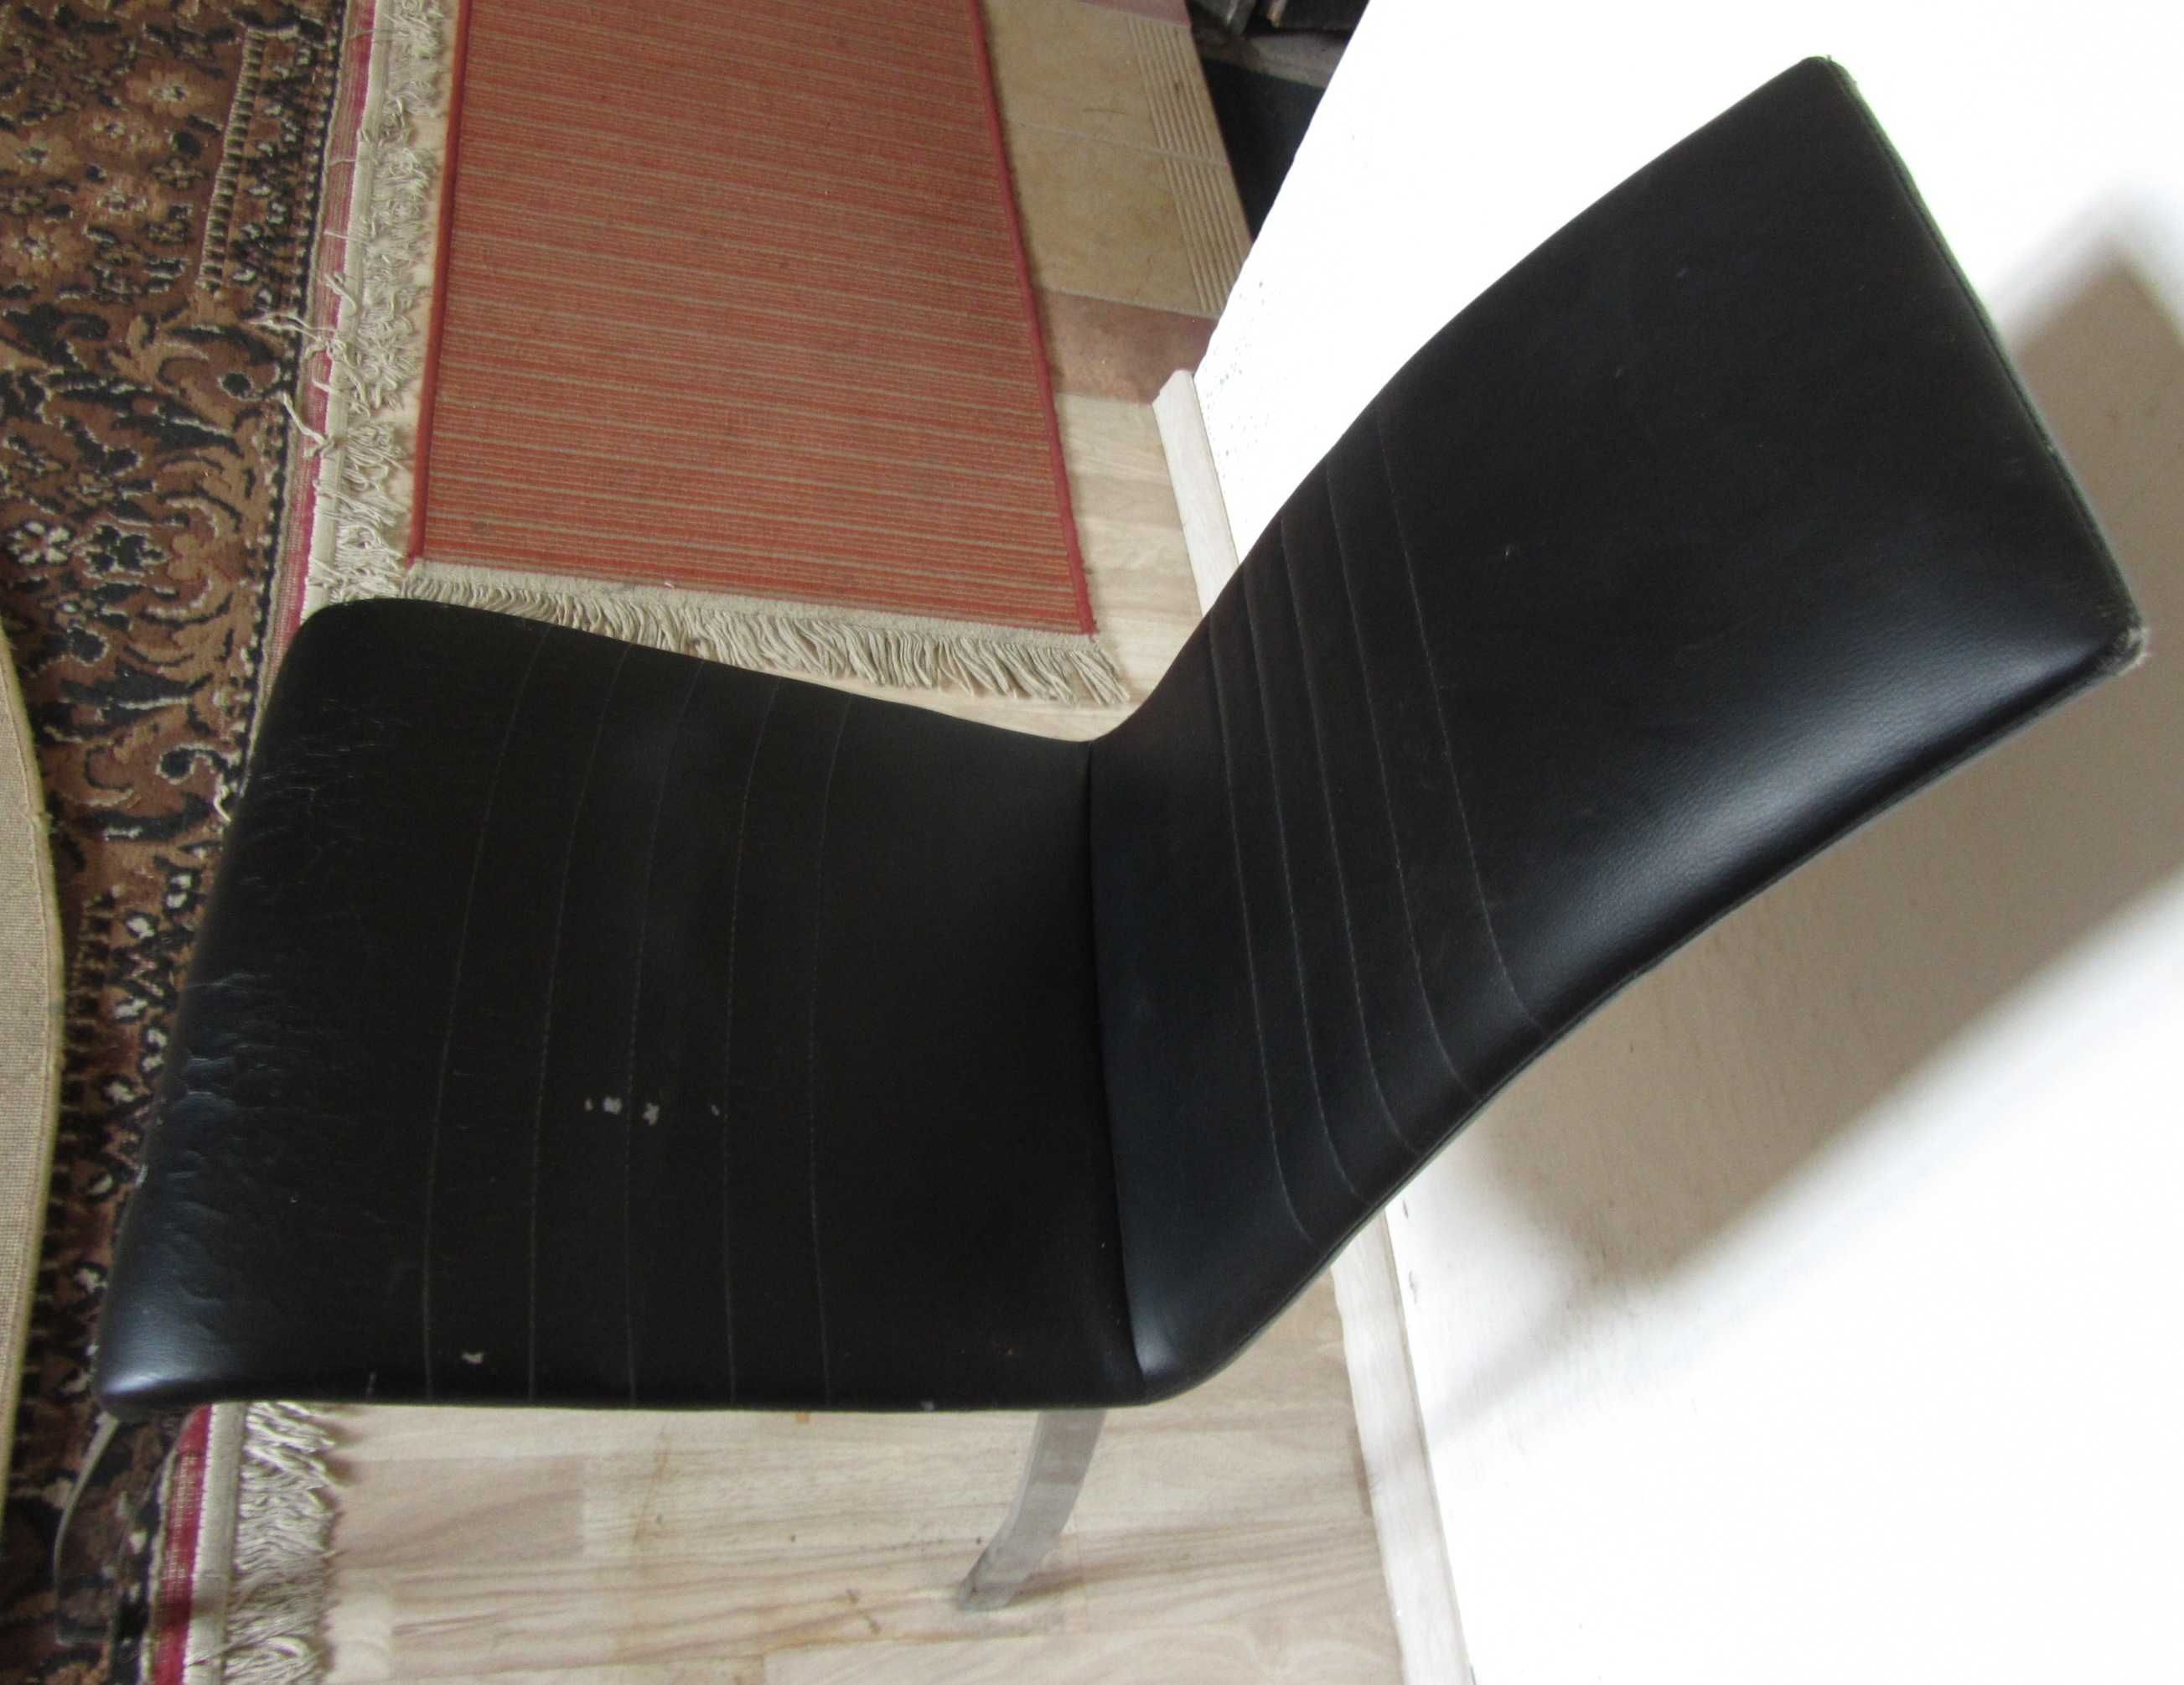 Krzesła na metalowych nogach w obiciu z ekoskóry, solidne, mocne